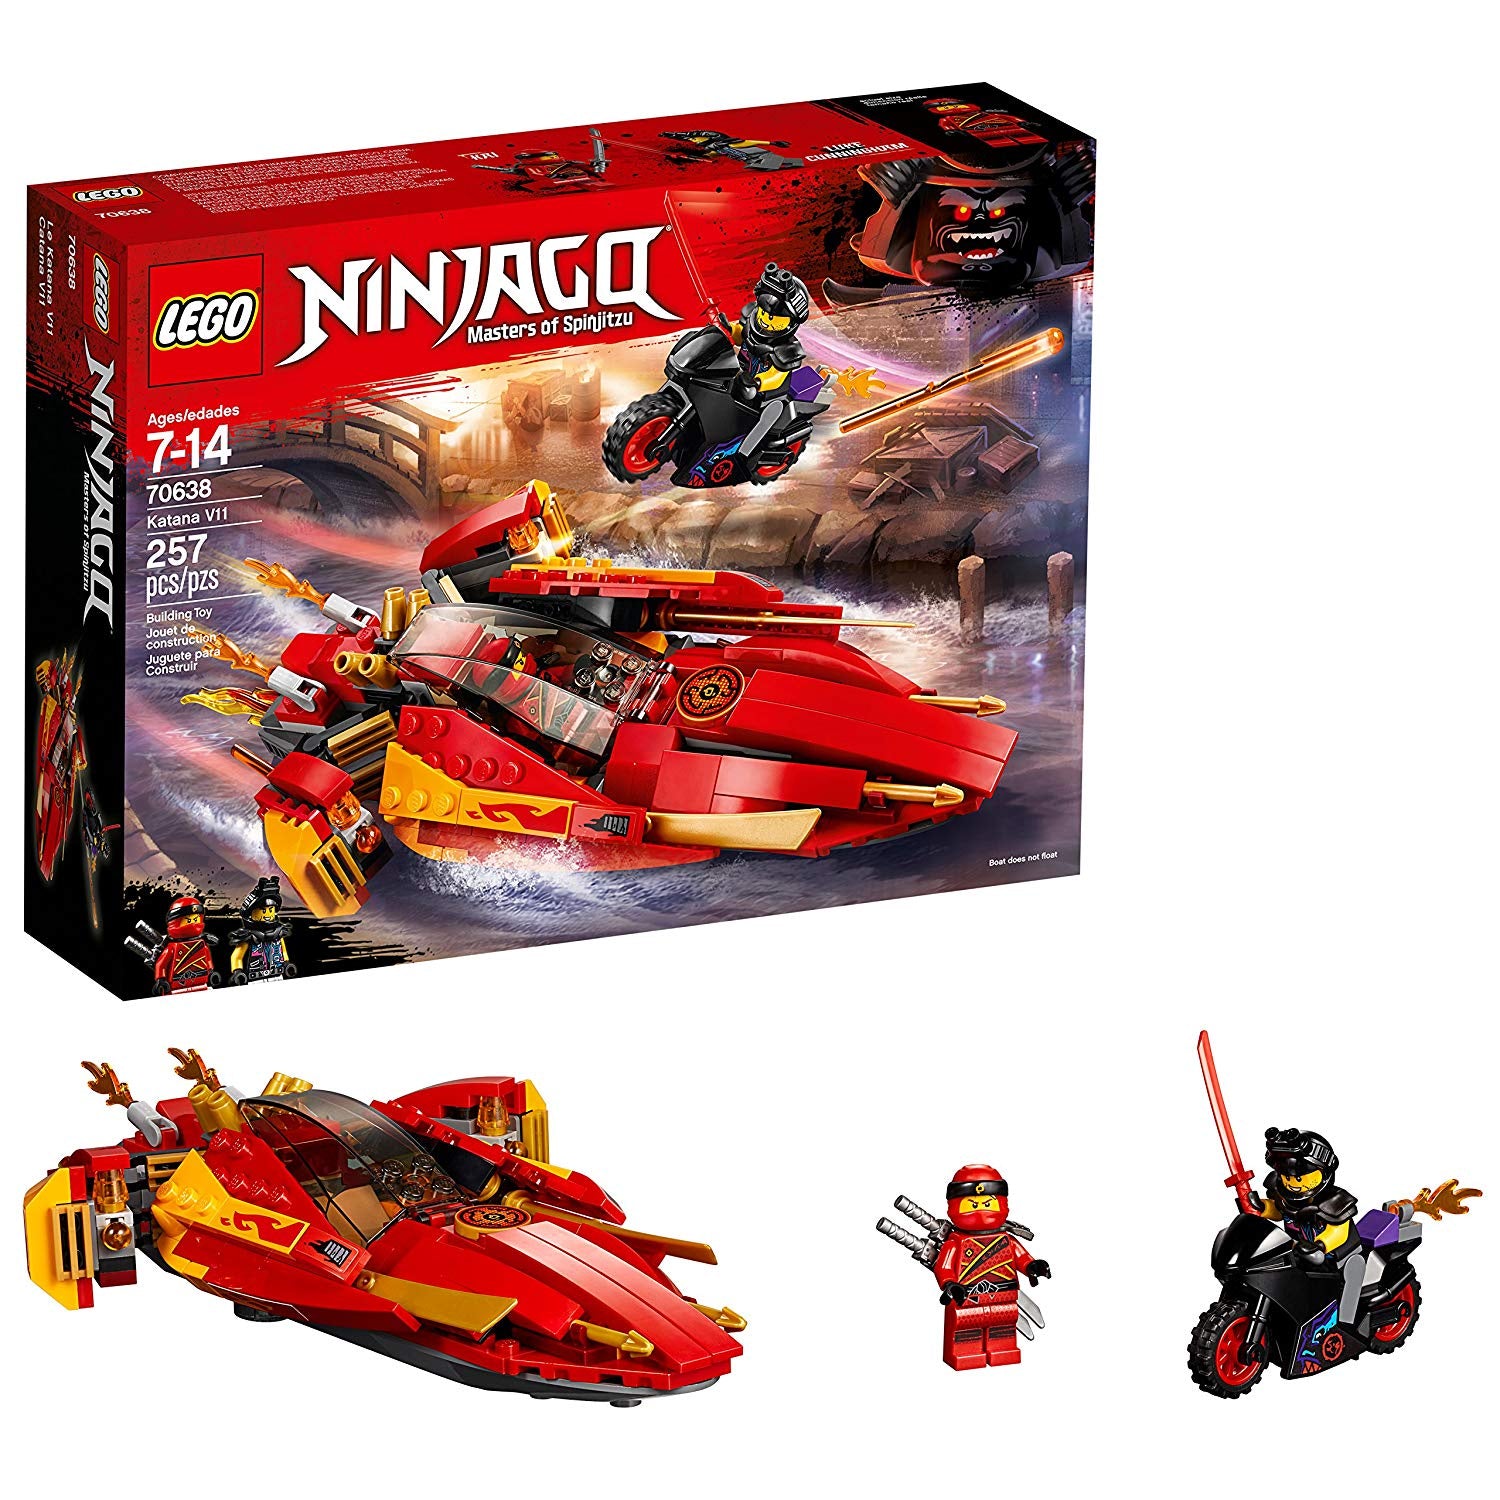 Lego Ninjago: Katana V11 70638